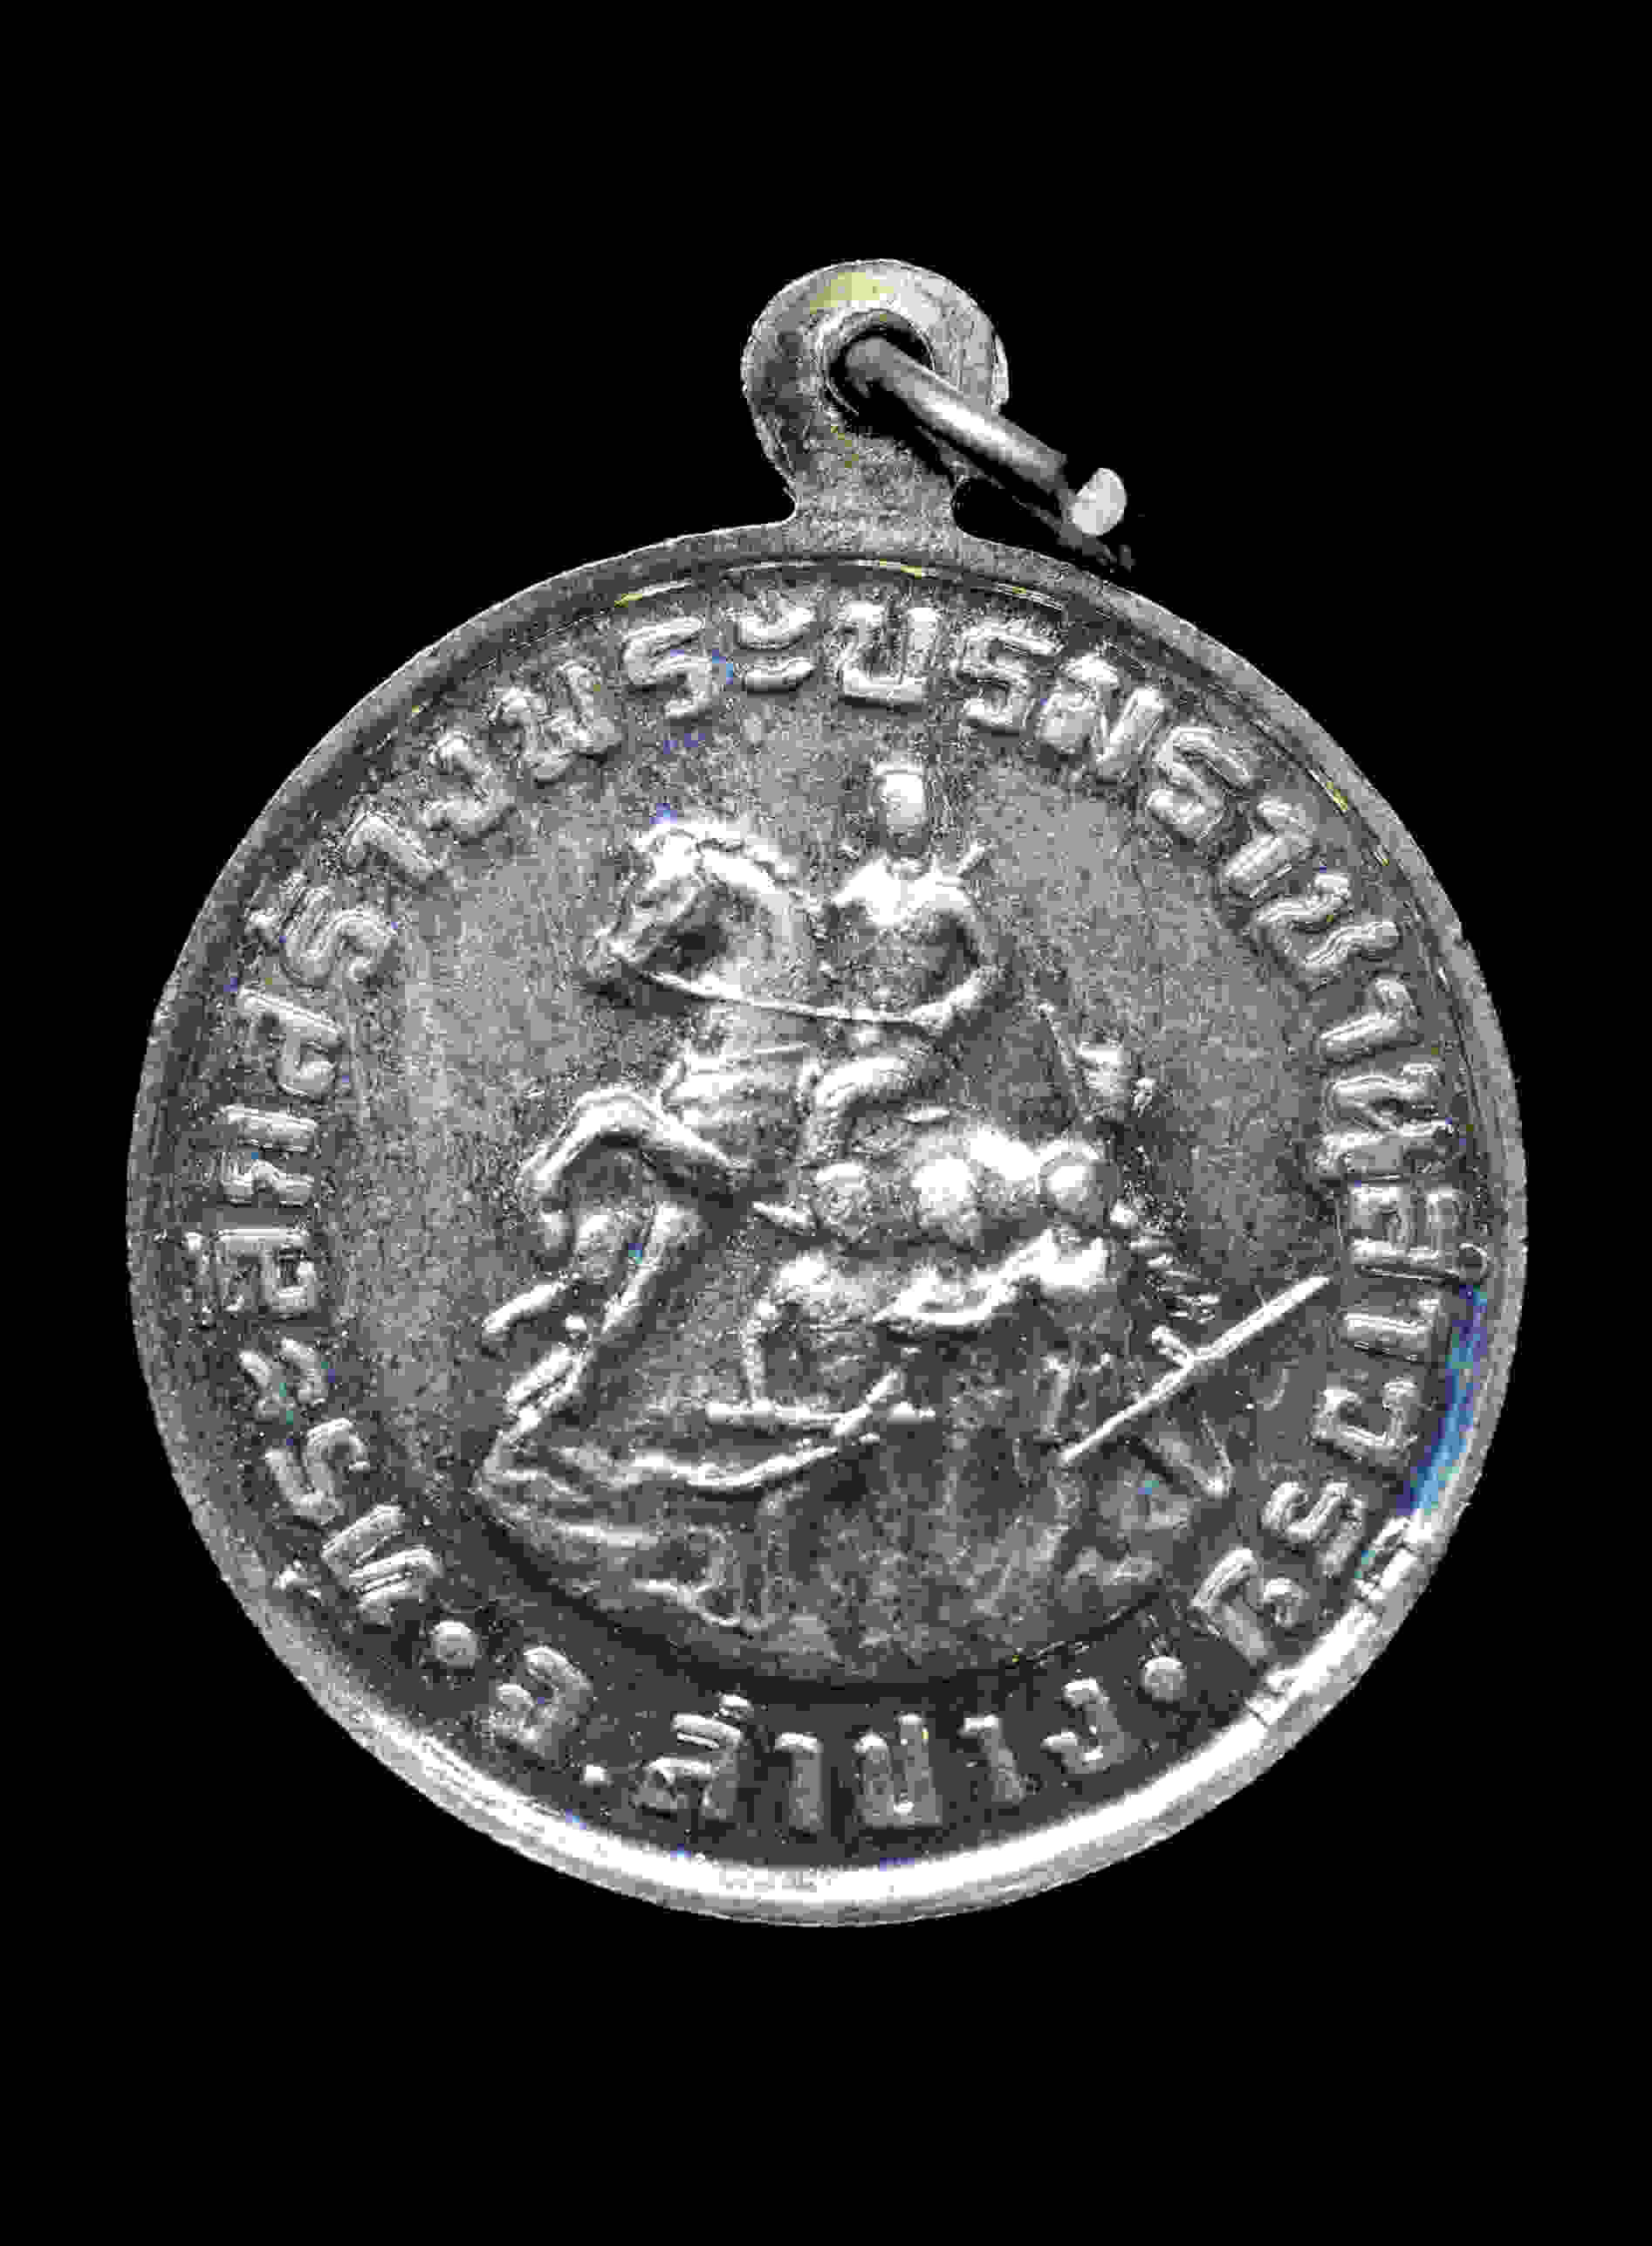 เหรียญพระรเรศวร เนื้อเงิน หลวงพ่อเกษม เขมโก ปลุกเสก ปี 2534 สร้างน้อย หายาก ราคาแบ่งปันครับ